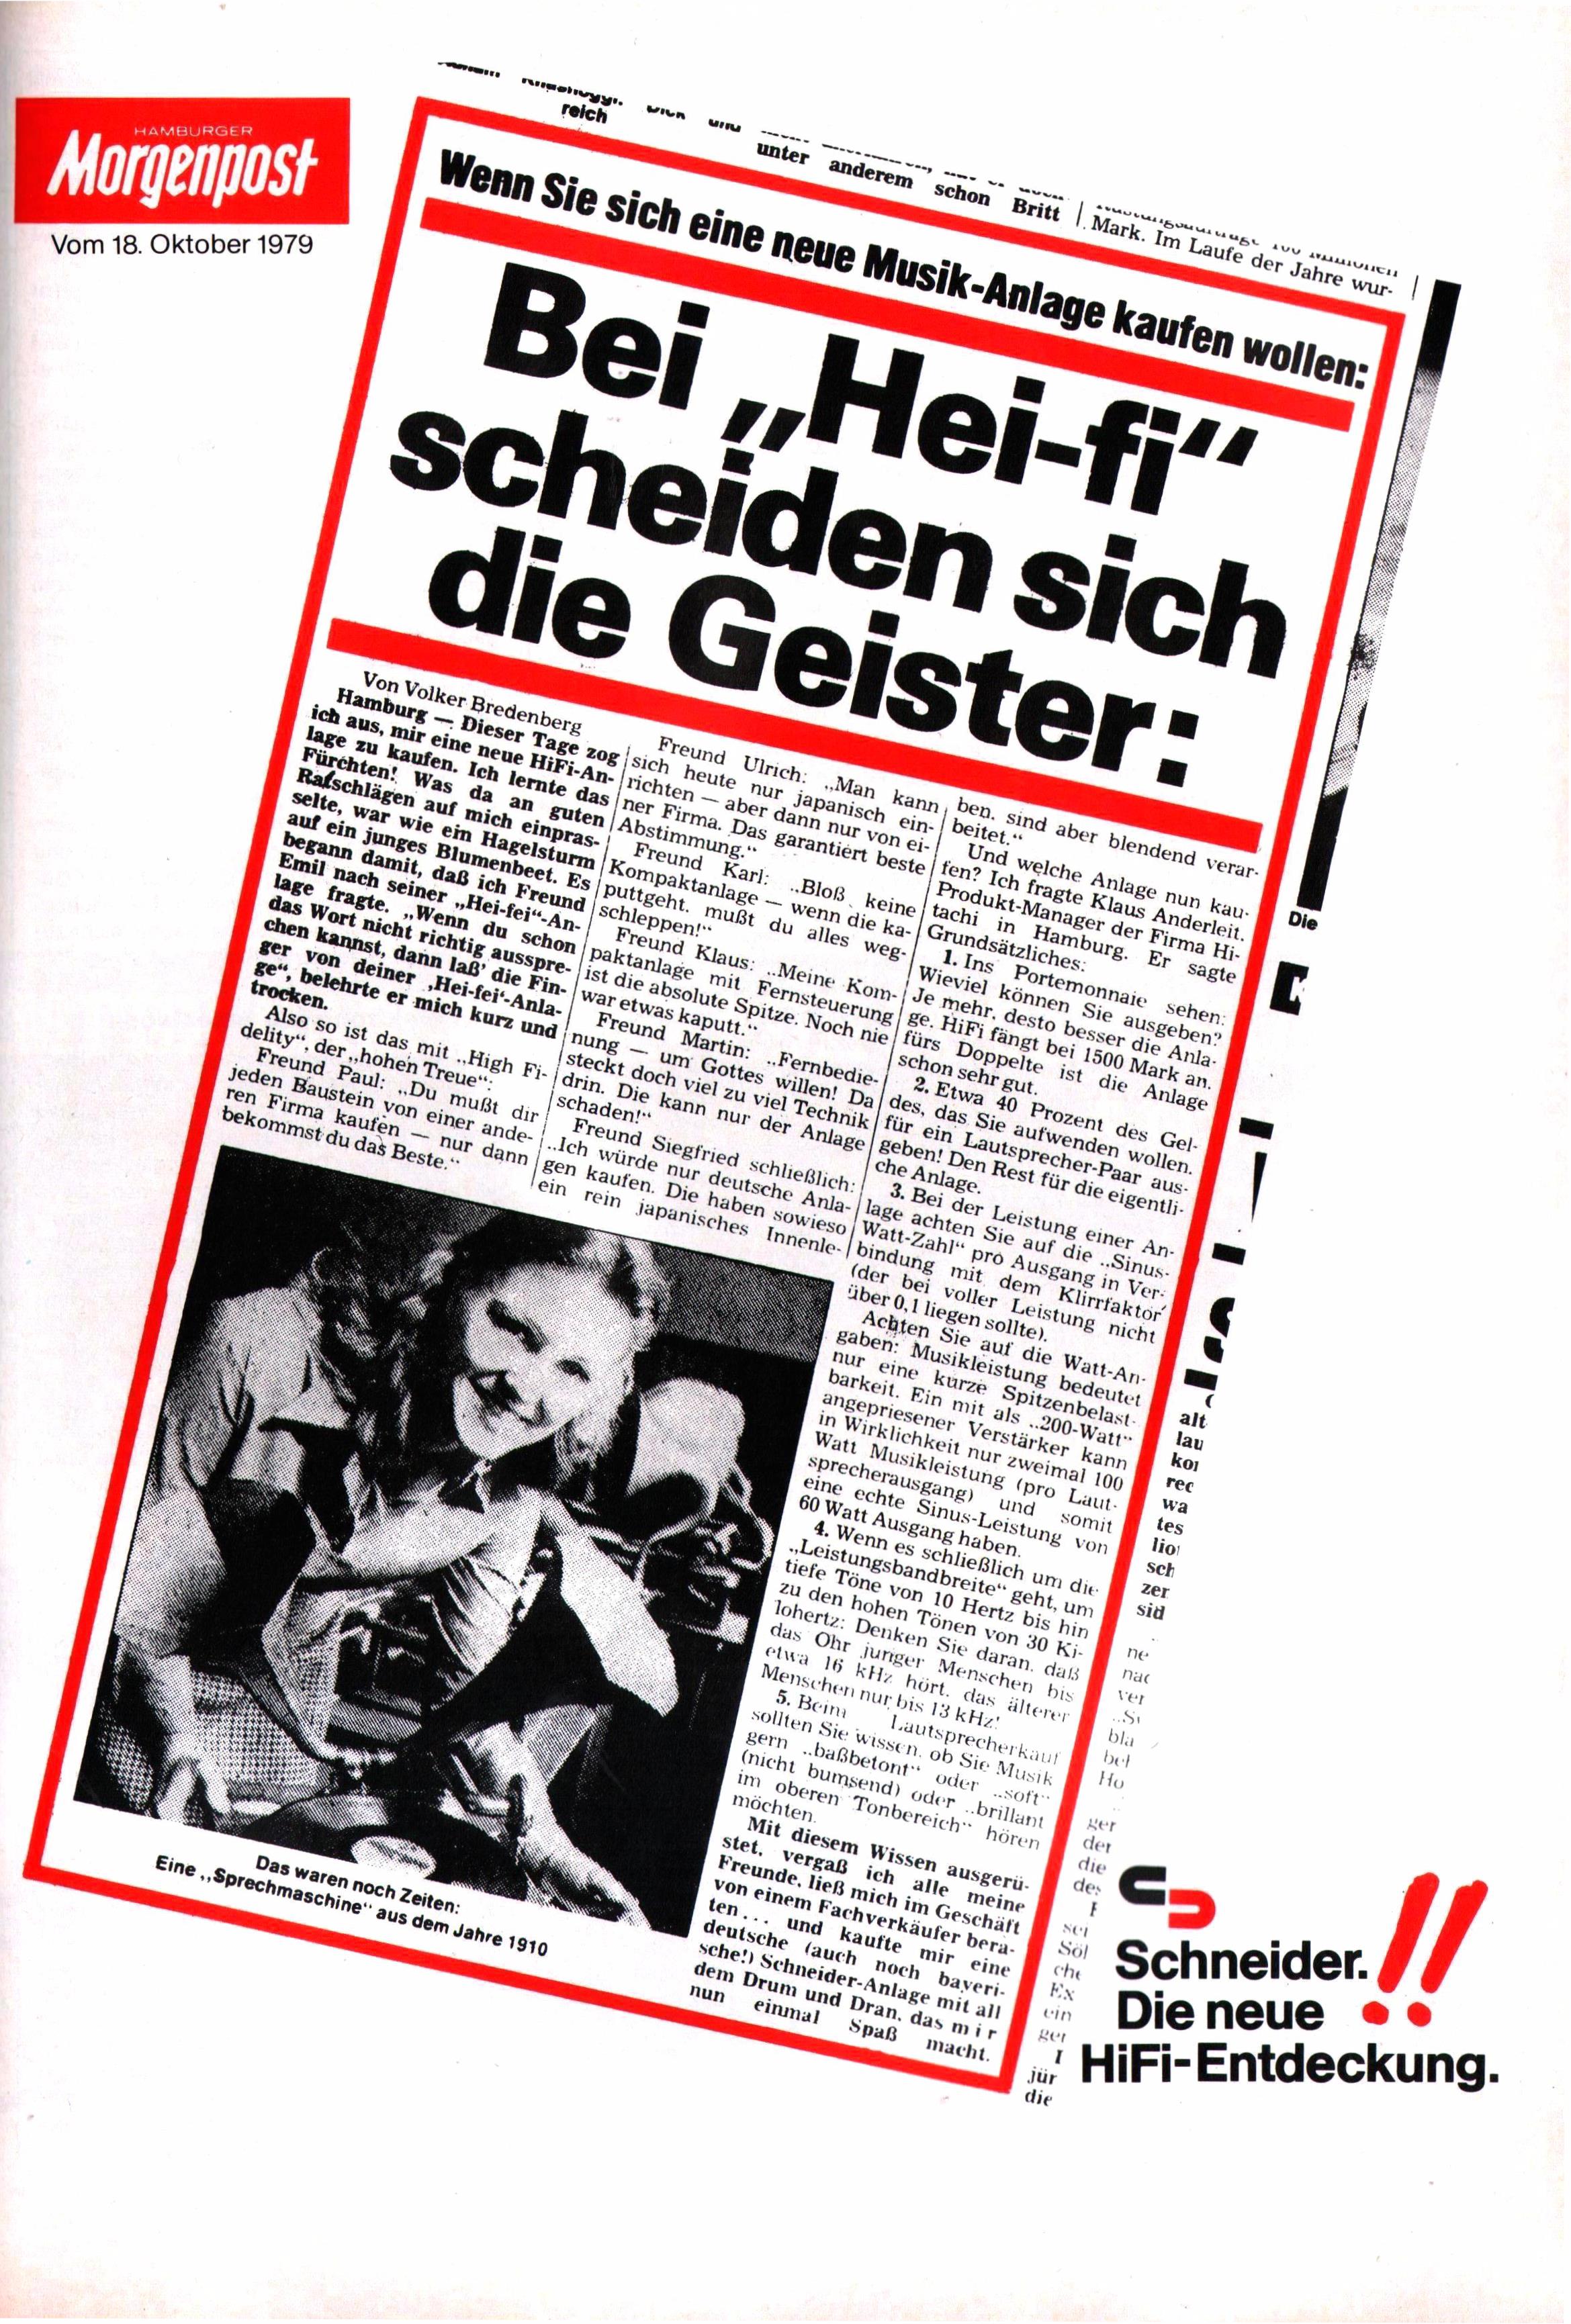 Schneider 1980 300.jpg